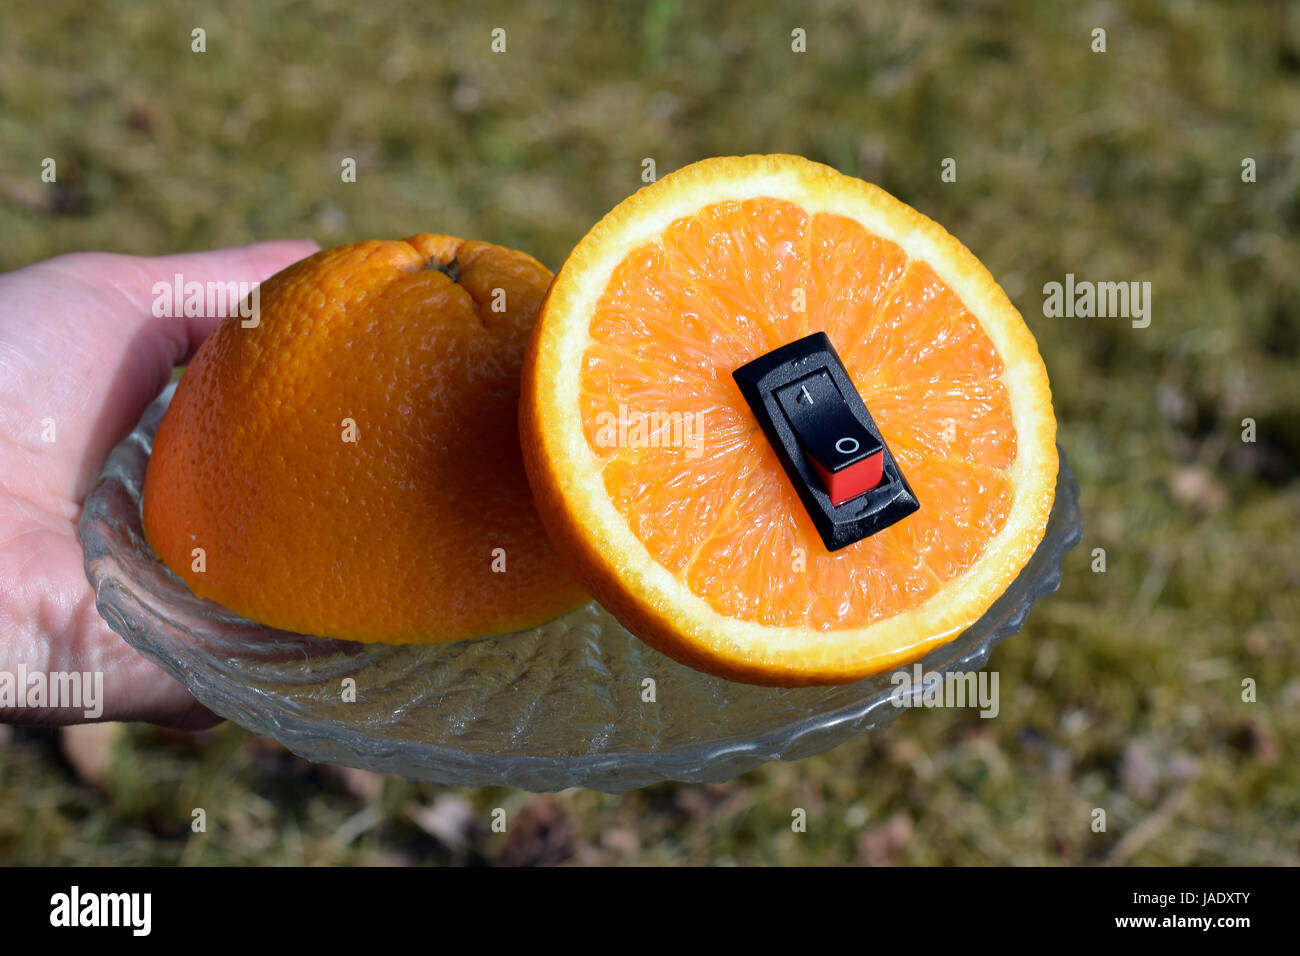 Unico cibo sano concetto. Donna mano che tiene una piastra con juicy orange con inserito un interruttore di alimentazione nel senso di un cambiamento di vita più sana. Foto Stock